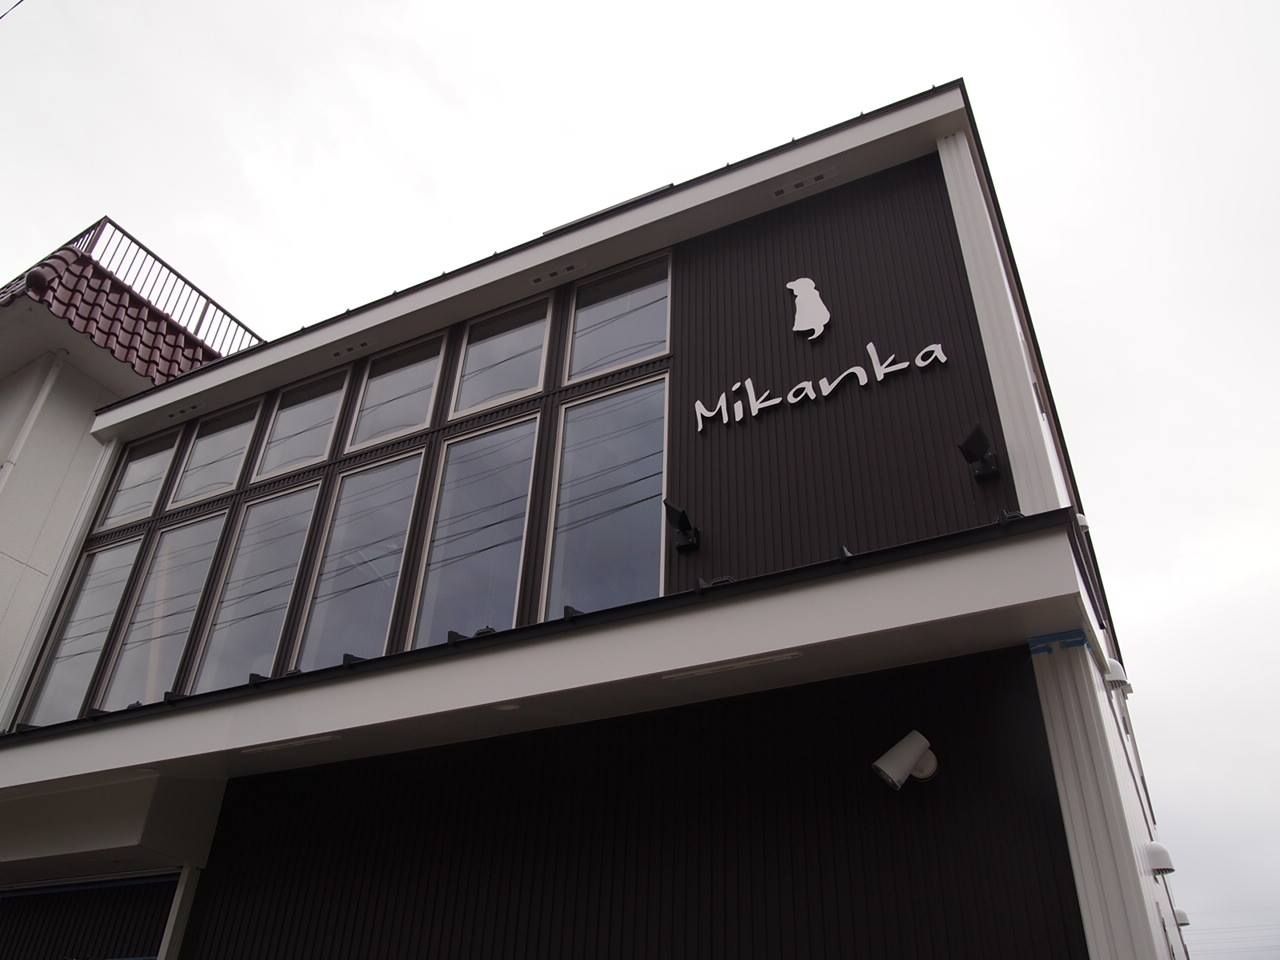 神奈川県小田原市のトリミングサロン Odawaracafe & salon Mikankaのサムネイル2枚目